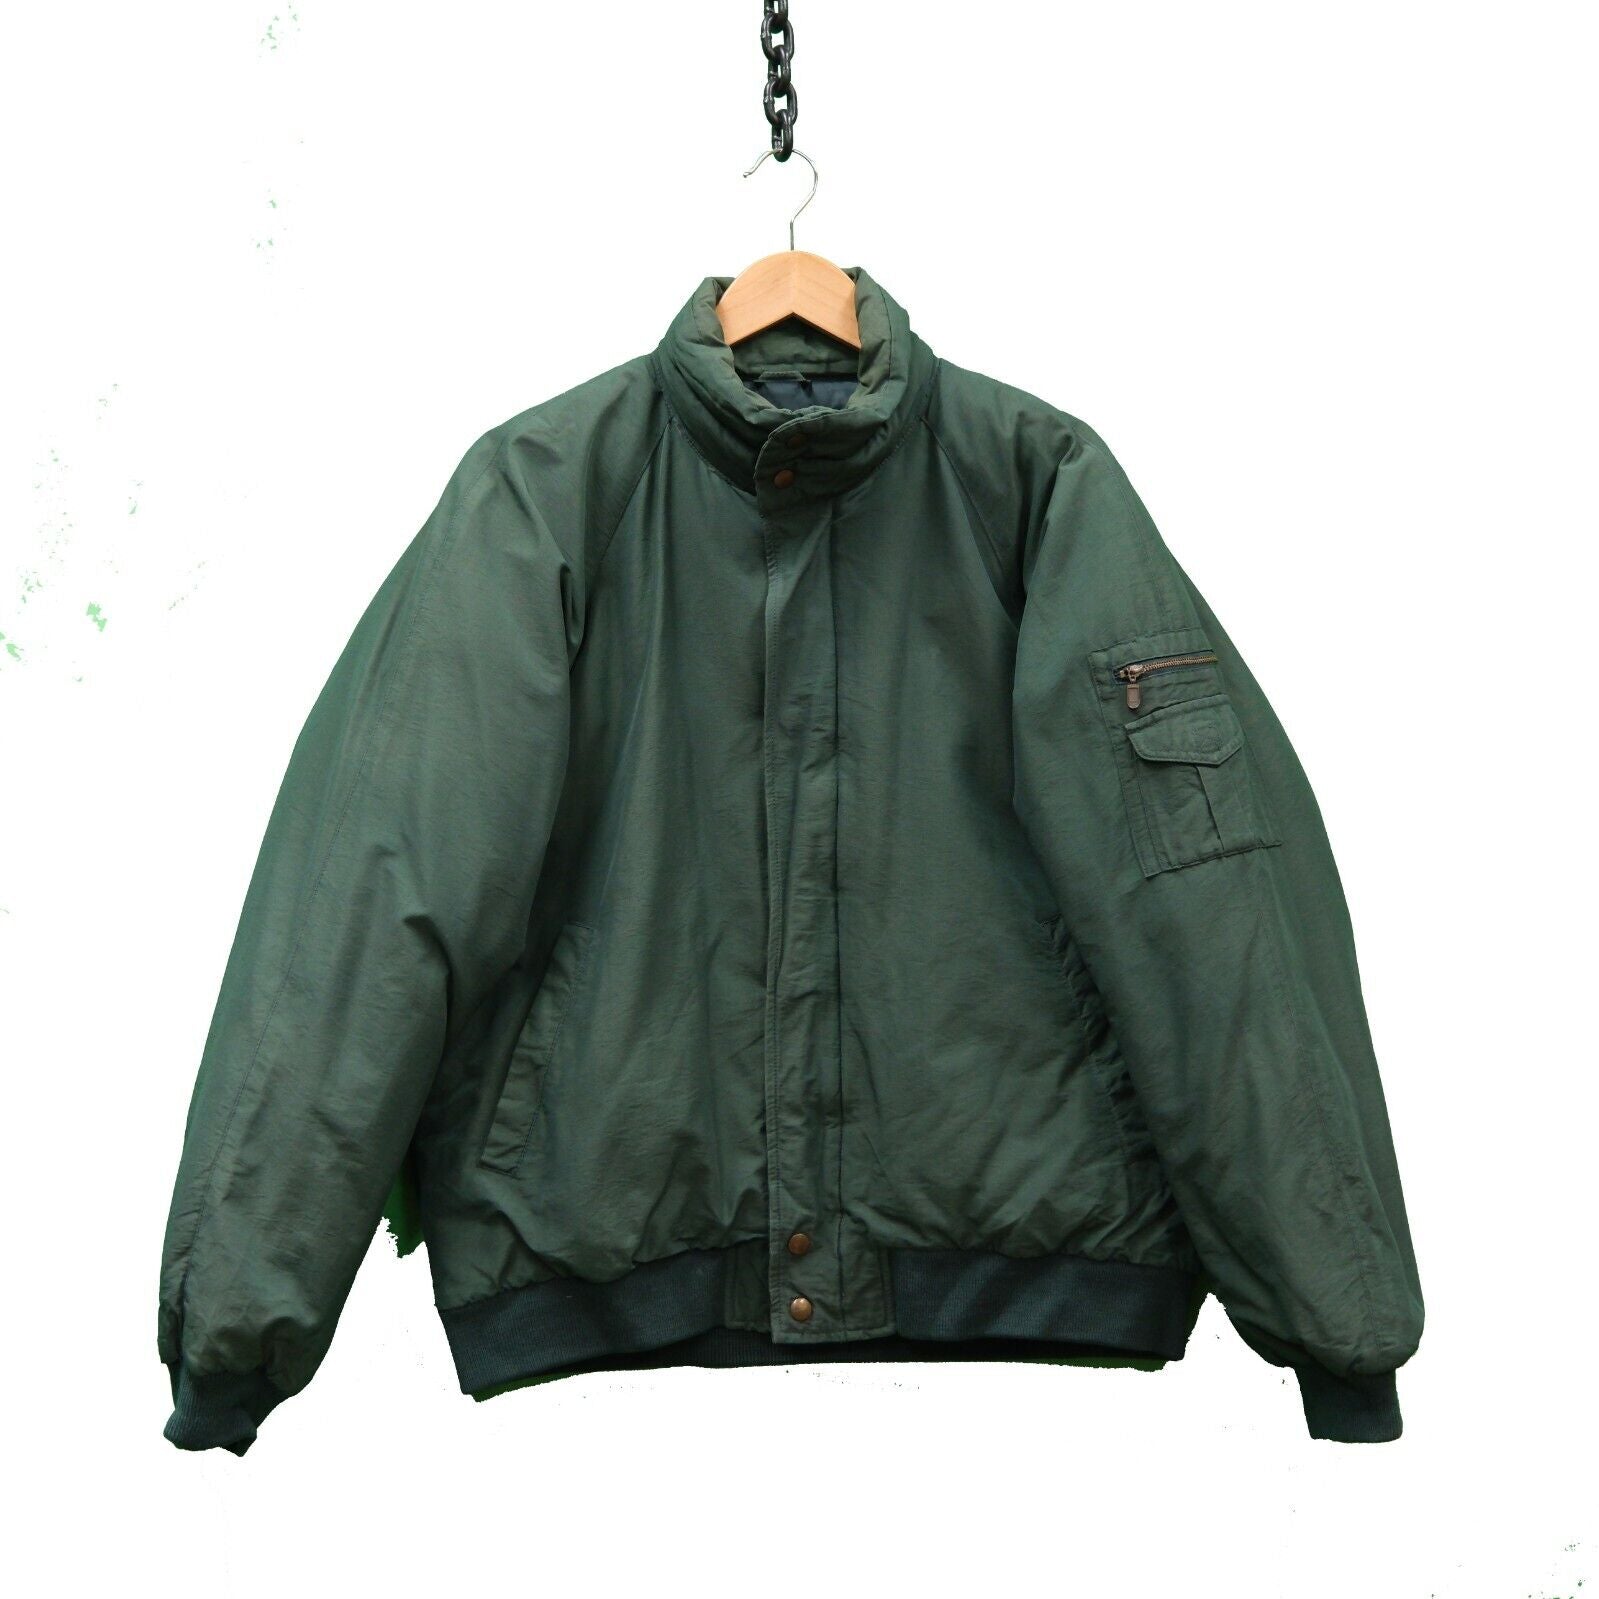 Vintage Eddie Bauer Puffer Jacket Size Medium Green Goose Down